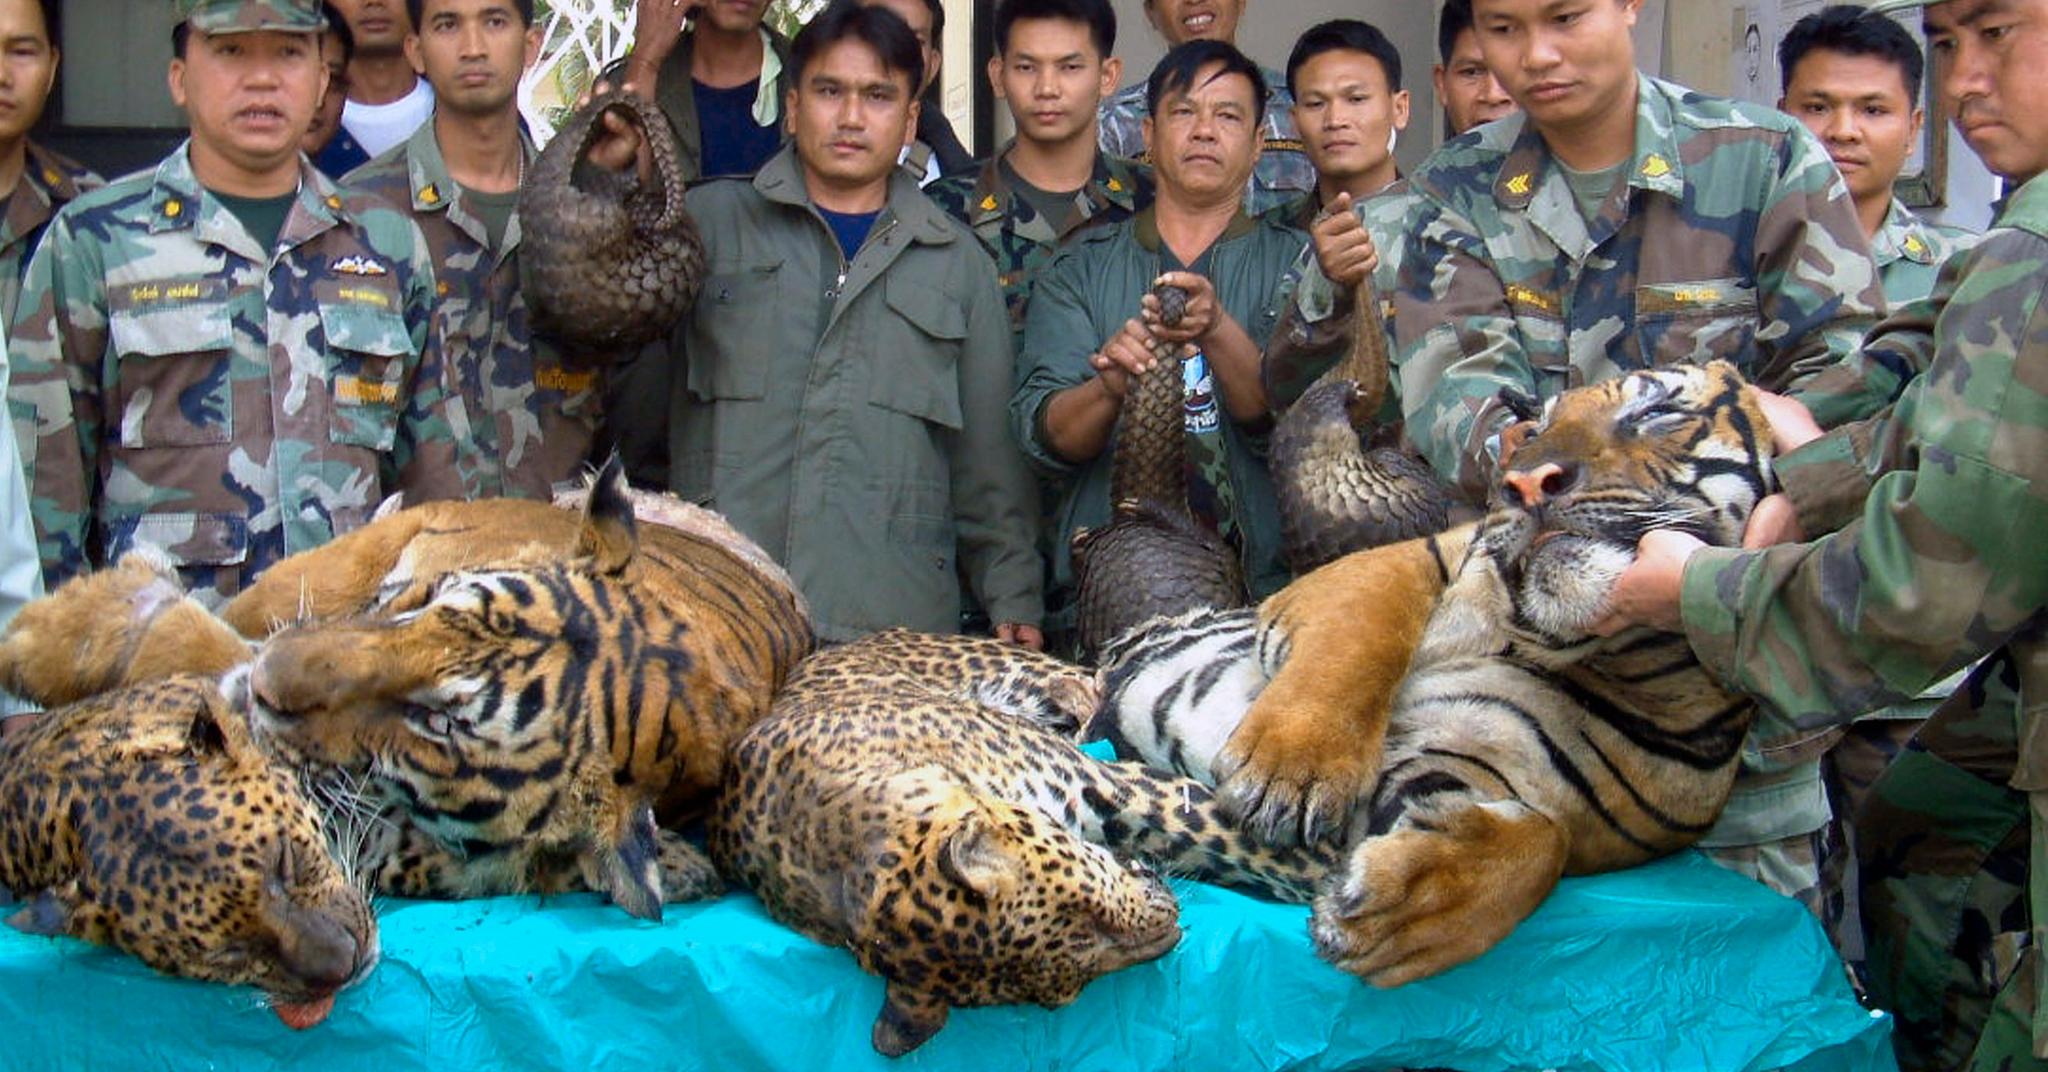 Handelen med levende og ville dyr har eksplodert de siste tiårene. Forskerne er ikke i tvil om at det utsetter menneskeheten for stor fare for nye dødelige pandemier. Dette er bildet er tatt under en politiaksjon mot ulovlig handel i Thailand i 2008.